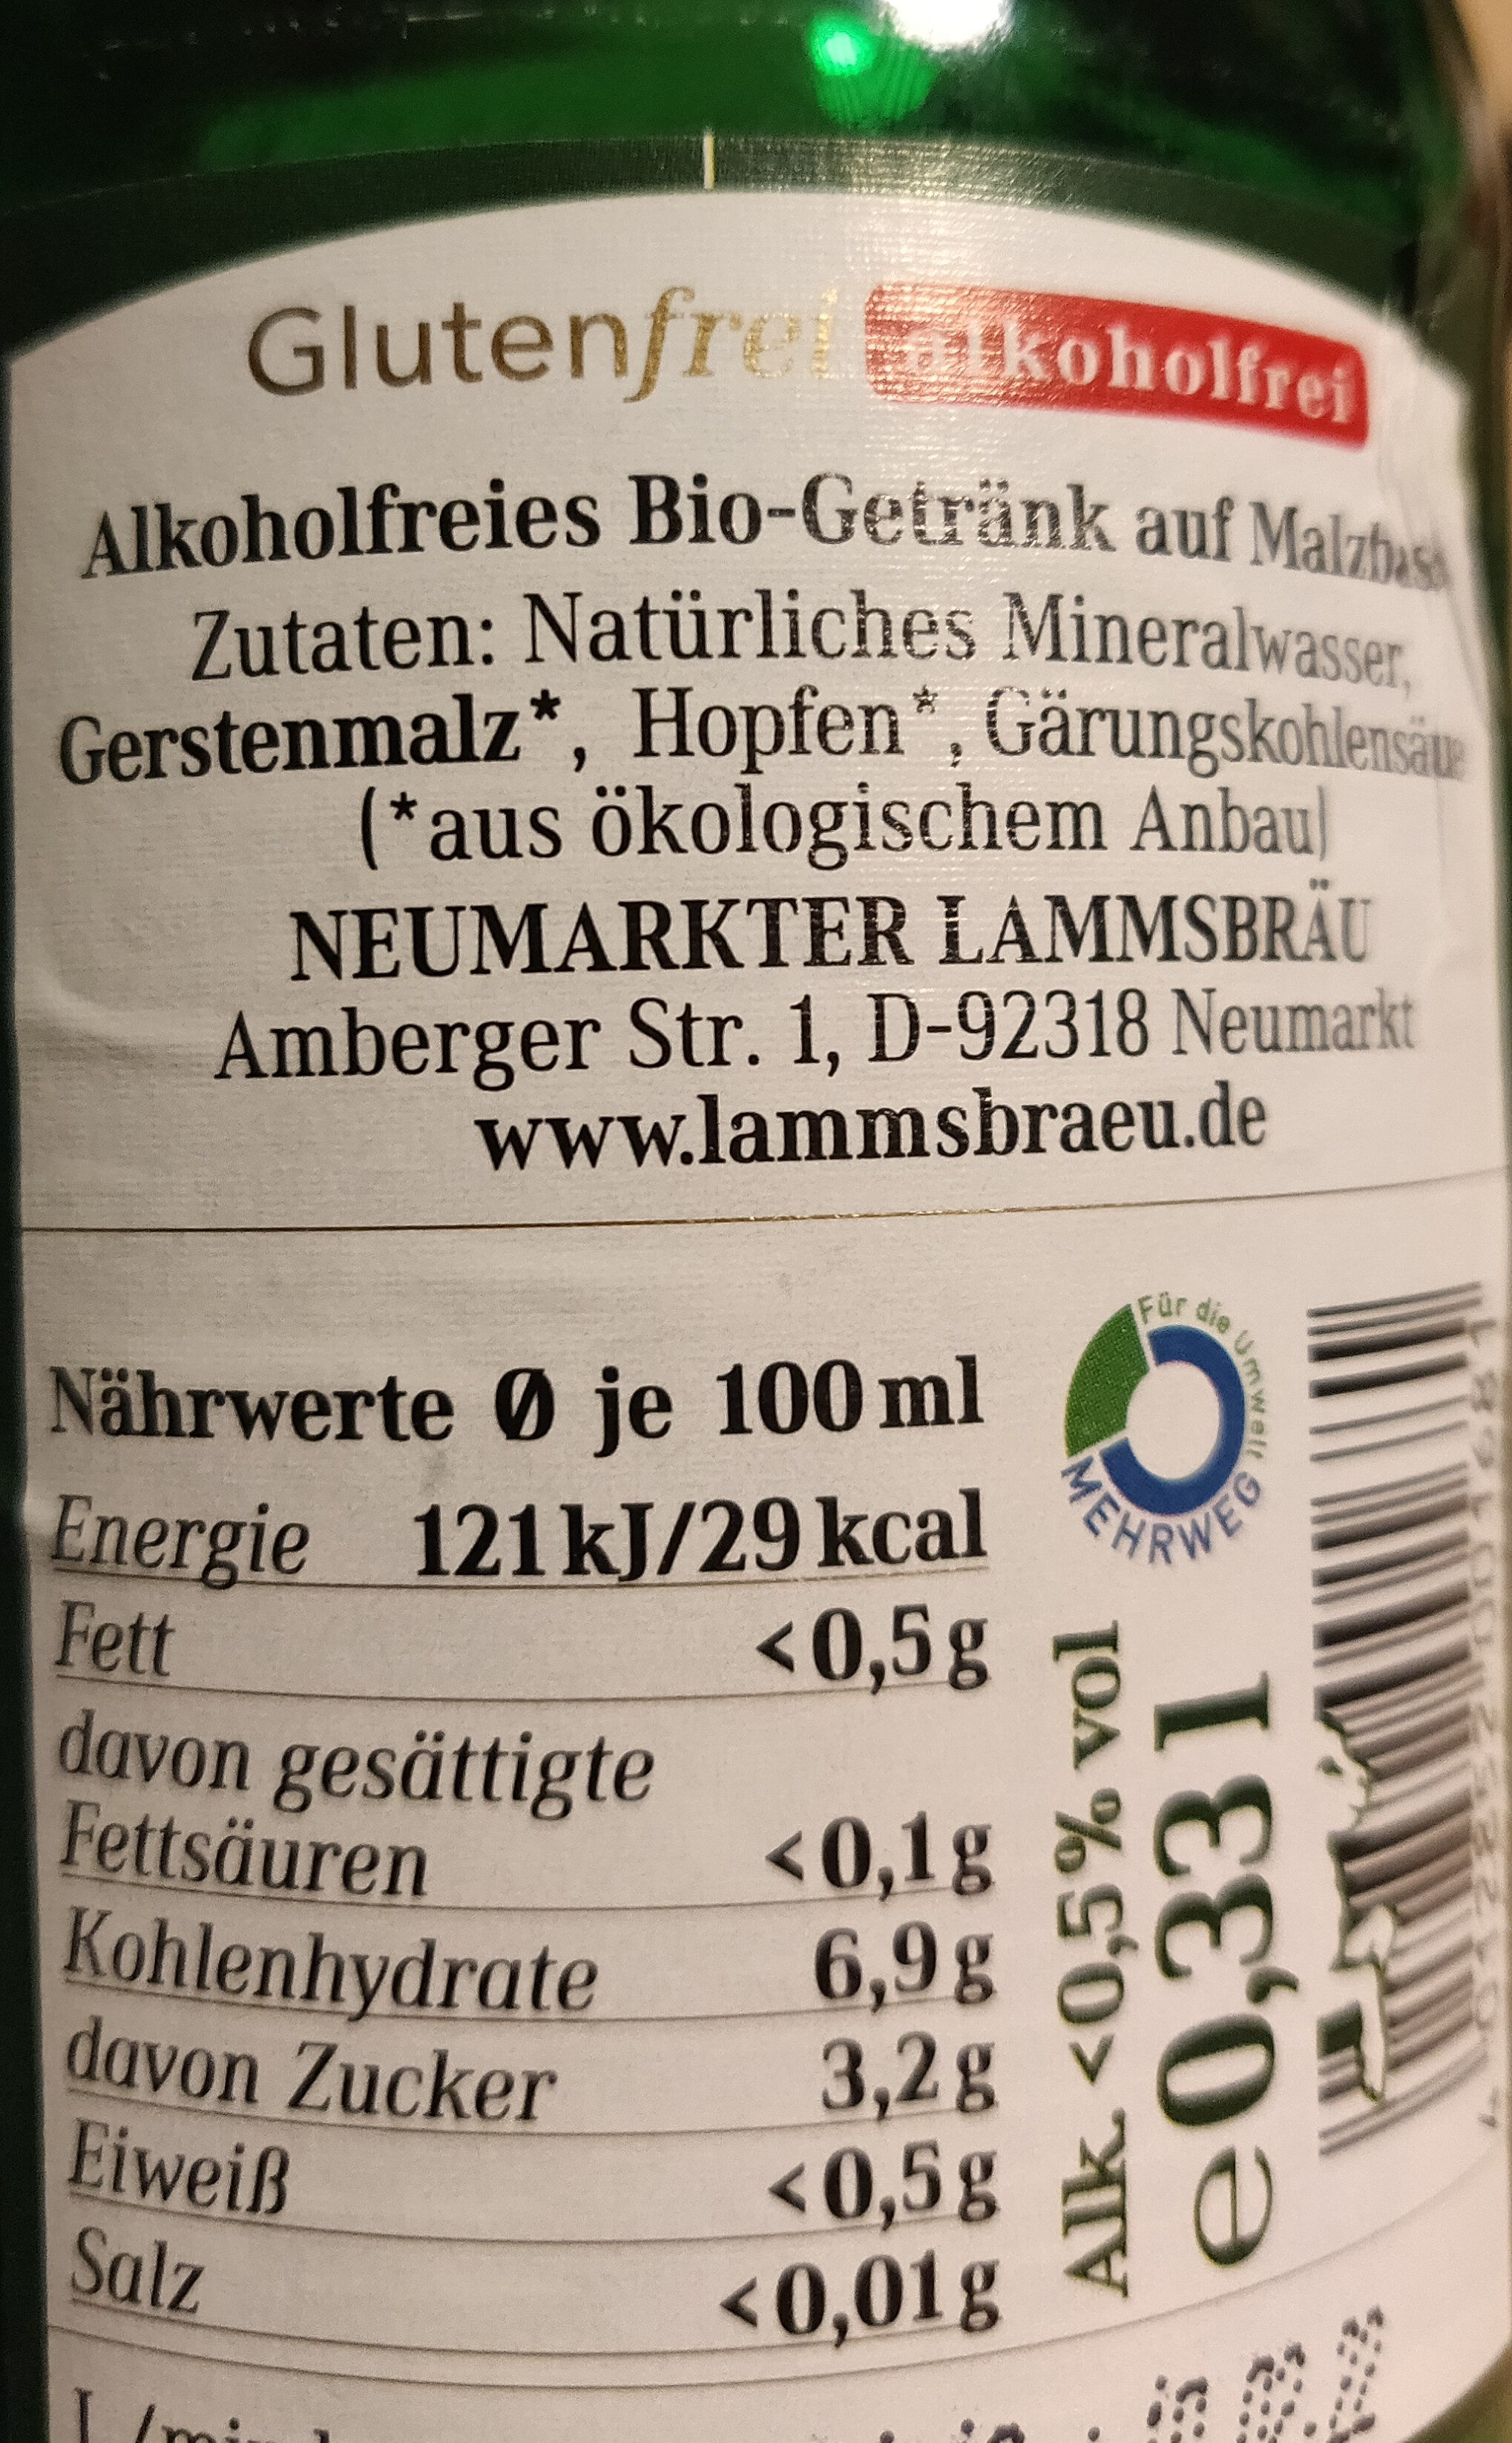 Lammsbräu Bier , glutenfrei, alkoholfrei - Nutrition facts - de